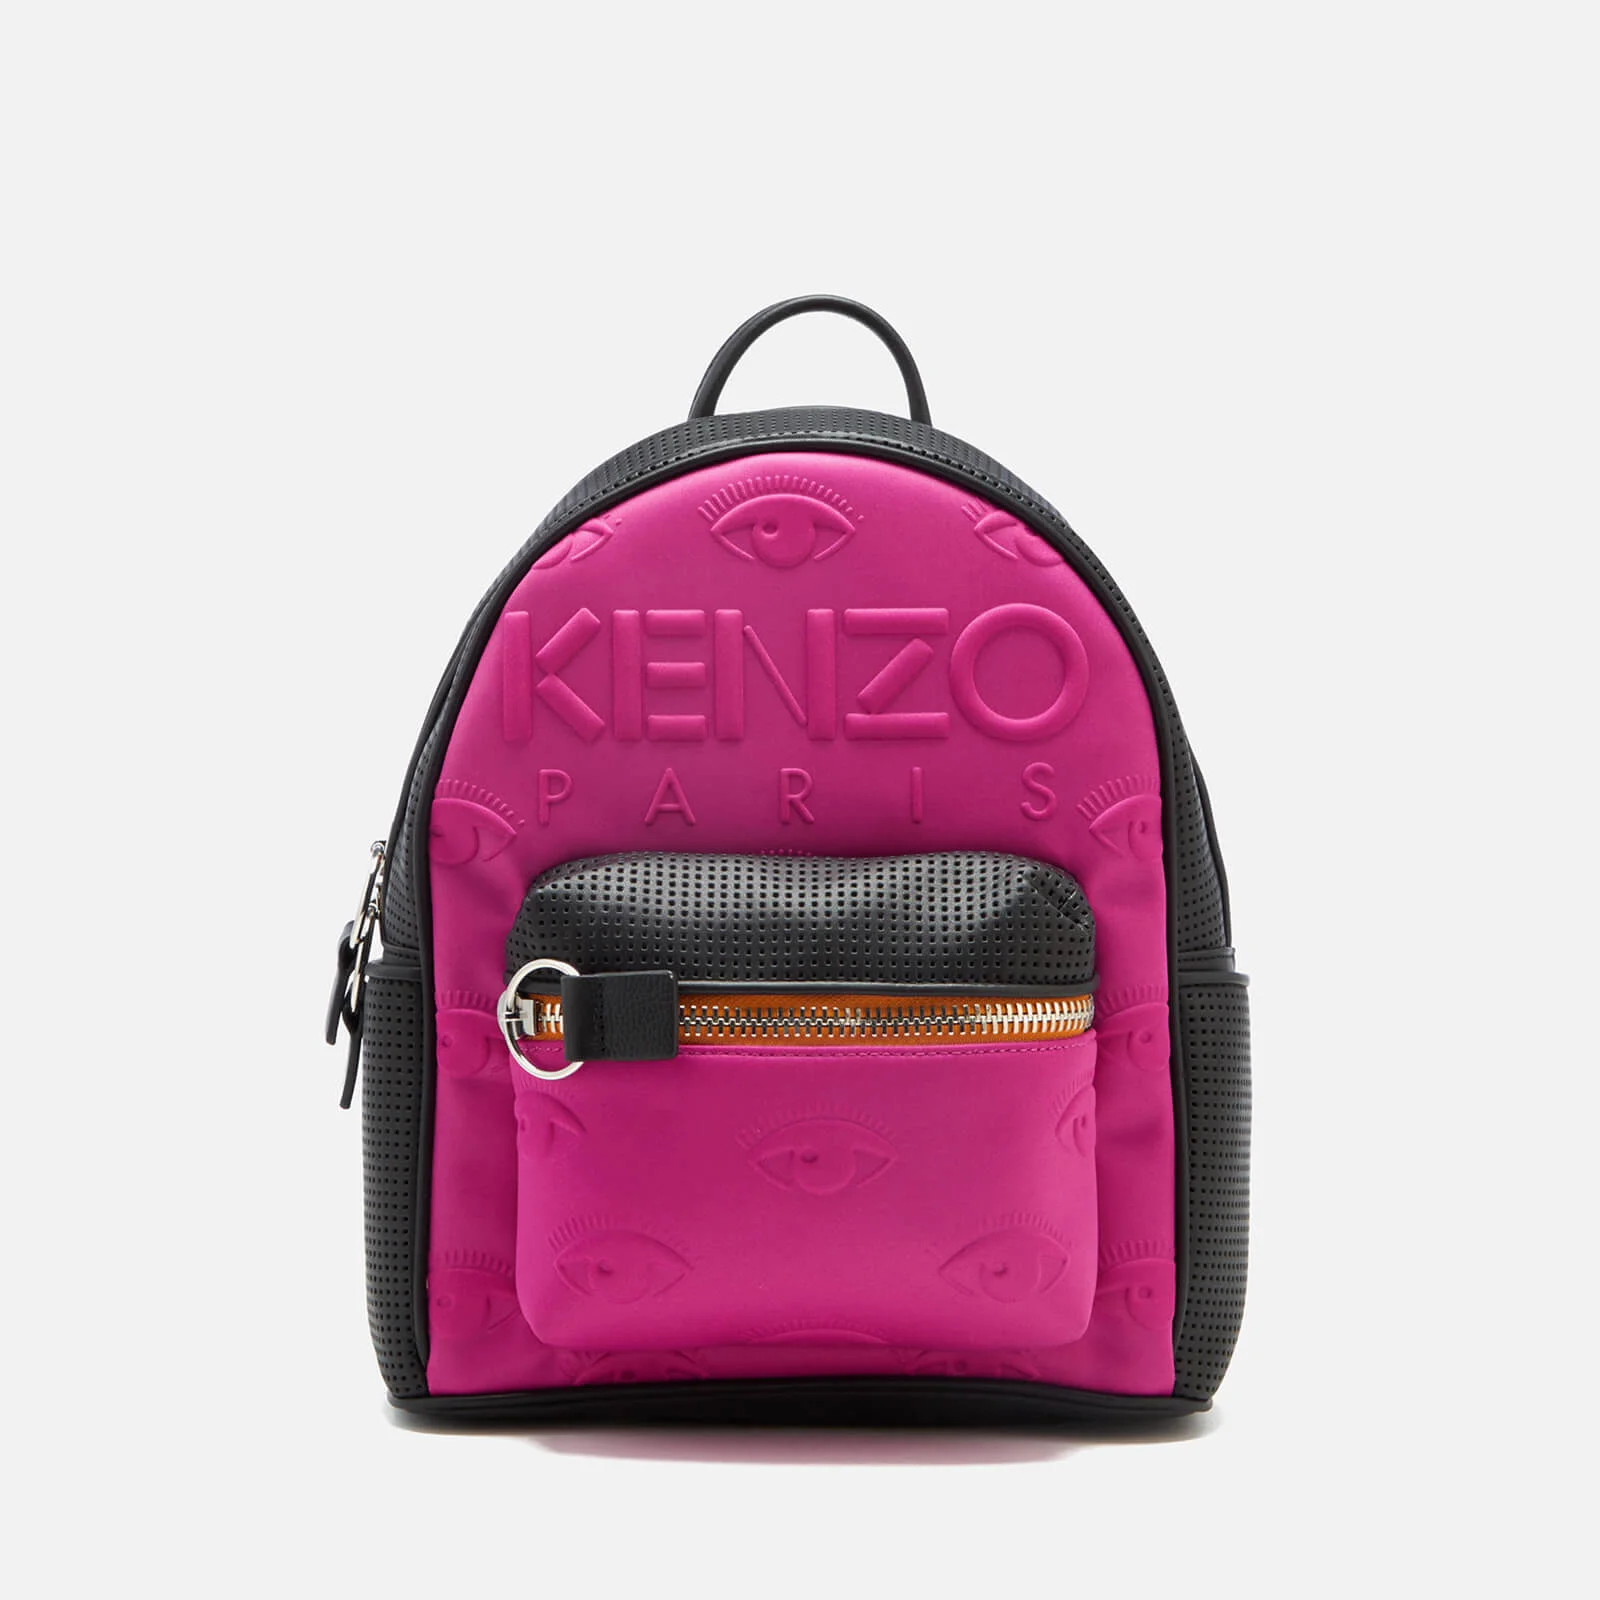 KENZO Women's Neoprene Backpack - Deep Fuchsia Image 1